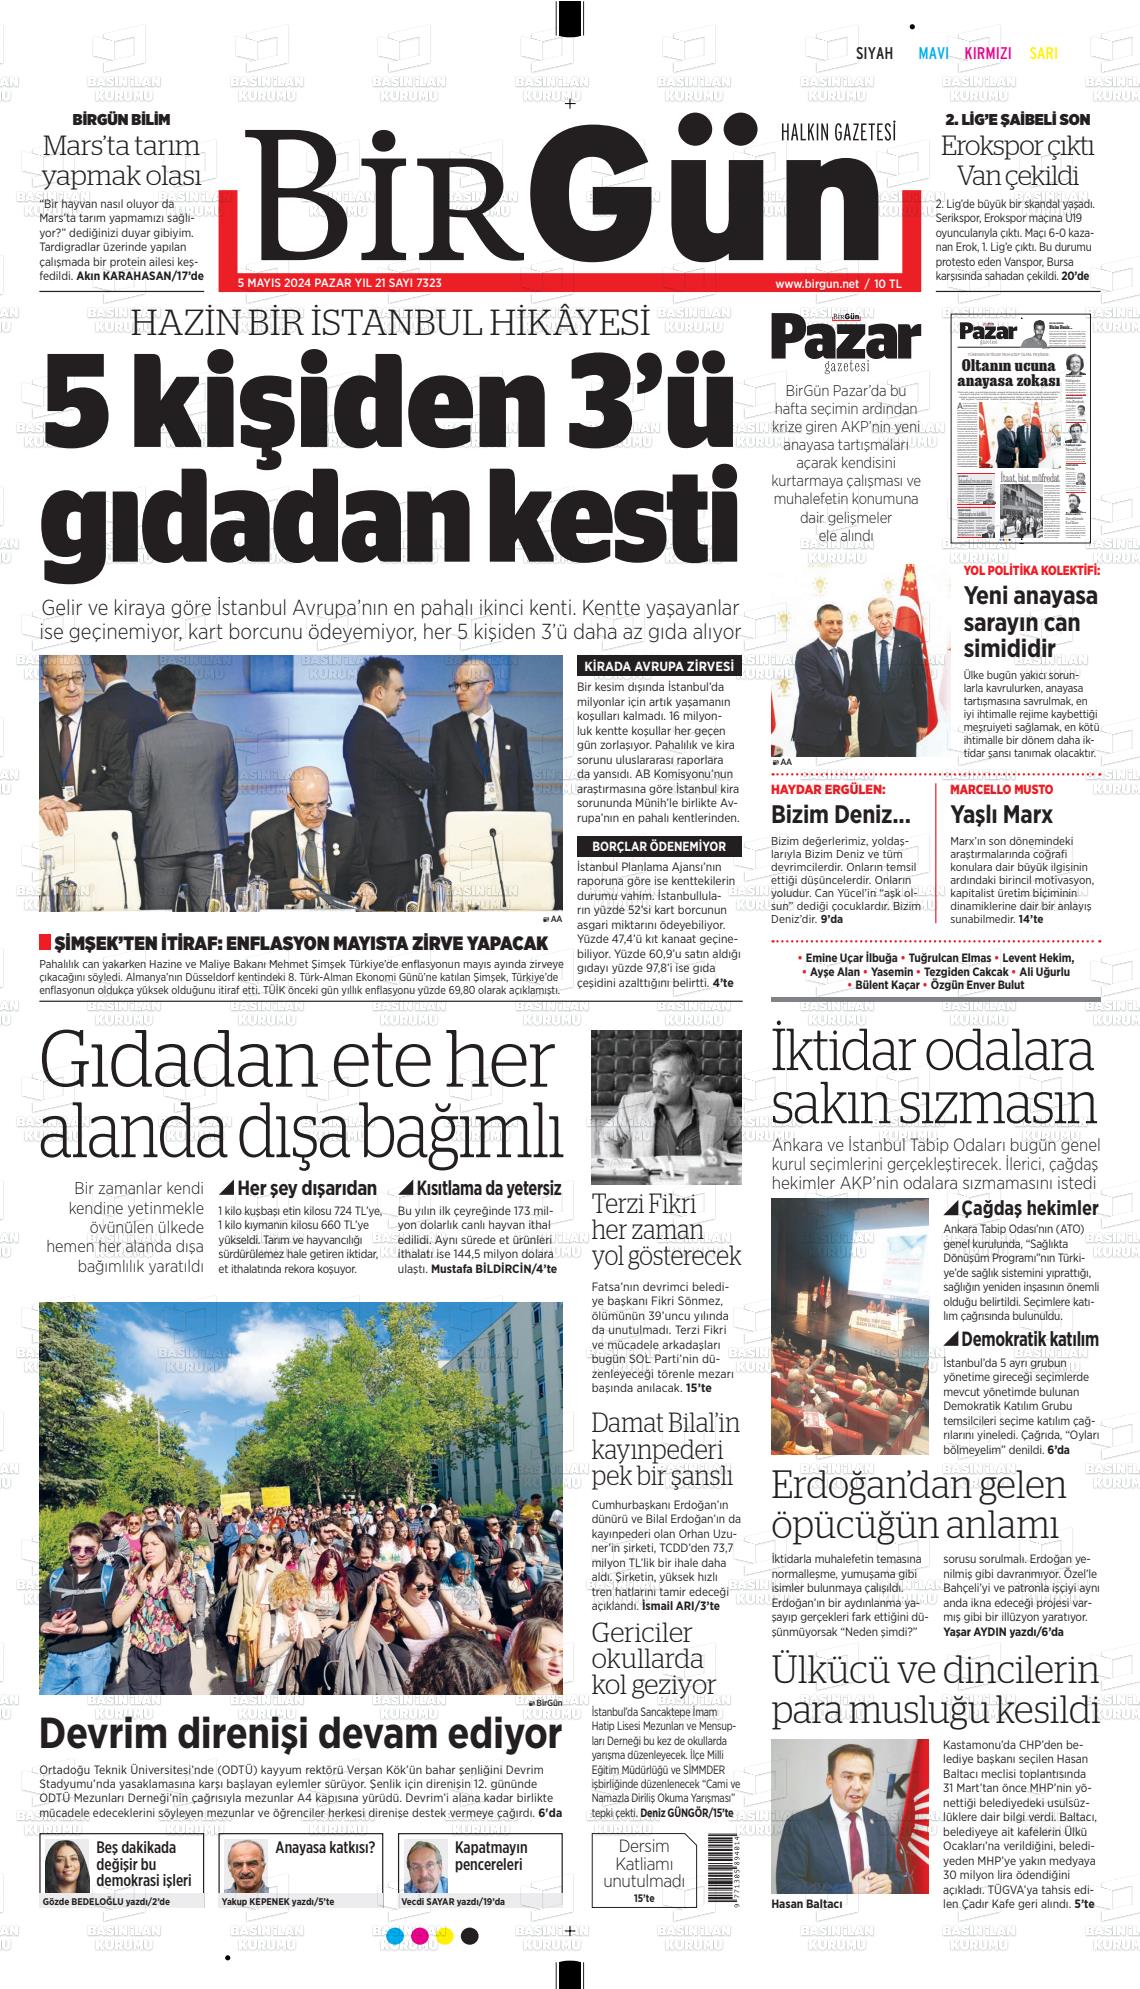 HALKIN GAZETESİ BİRGÜN Gazetesi